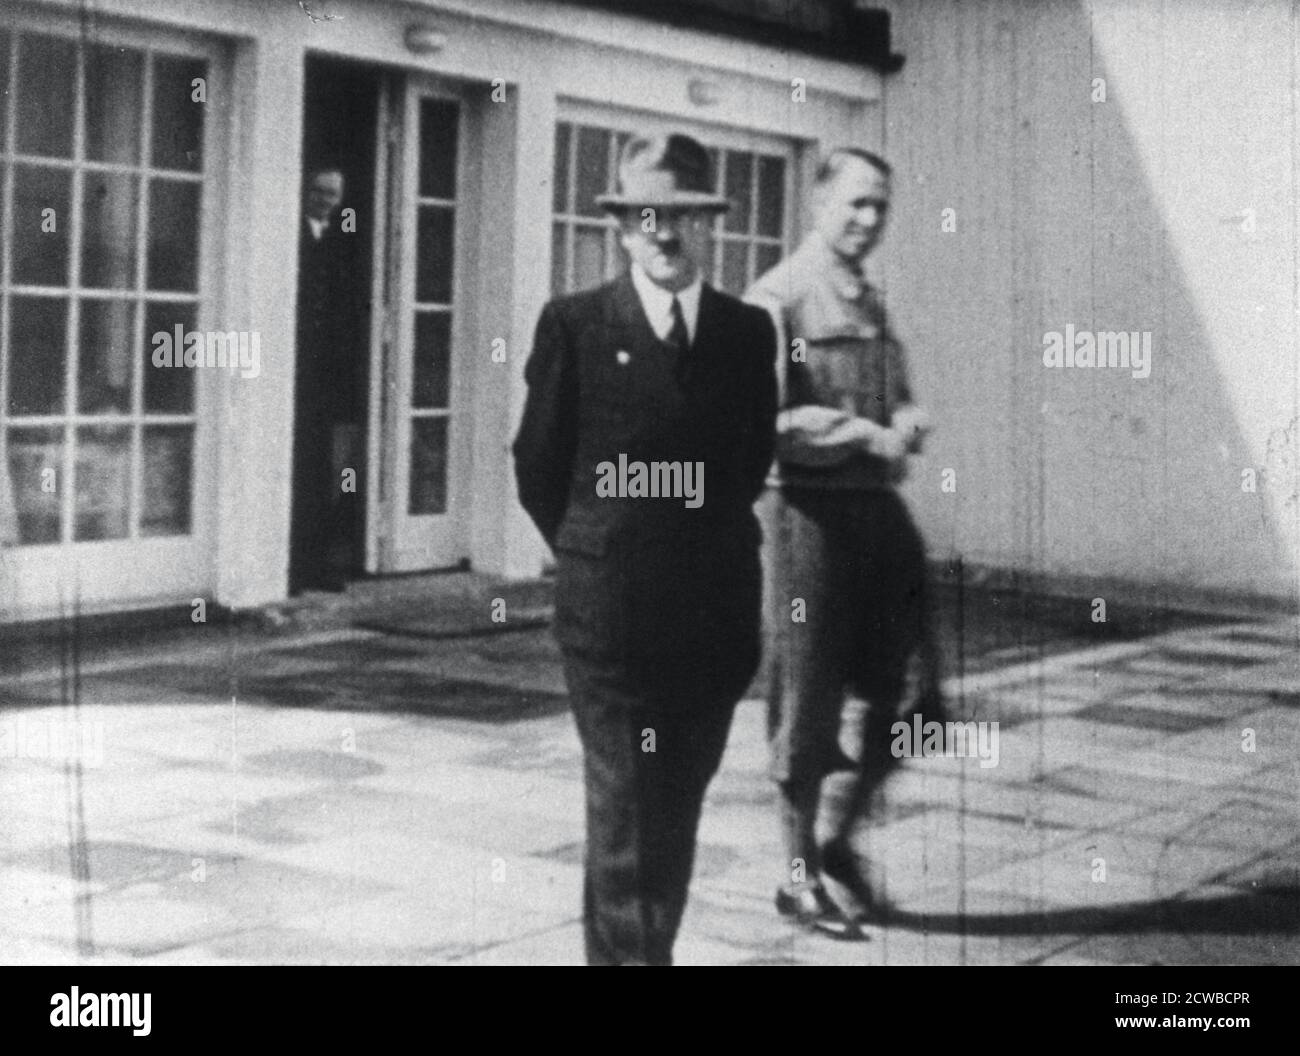 Adolf Hitler auf der Terrasse des Berghofs, seine Exerzitien in Berchtesgaden, Bayern, Deutschland, c1936-1945. Hitler erwarb den Berghof in den bayerischen Alpen, 1933 mit dem Erlös aus dem Verkauf von Kopien von Mein Kampf. Der Fotograf ist unbekannt. Stockfoto